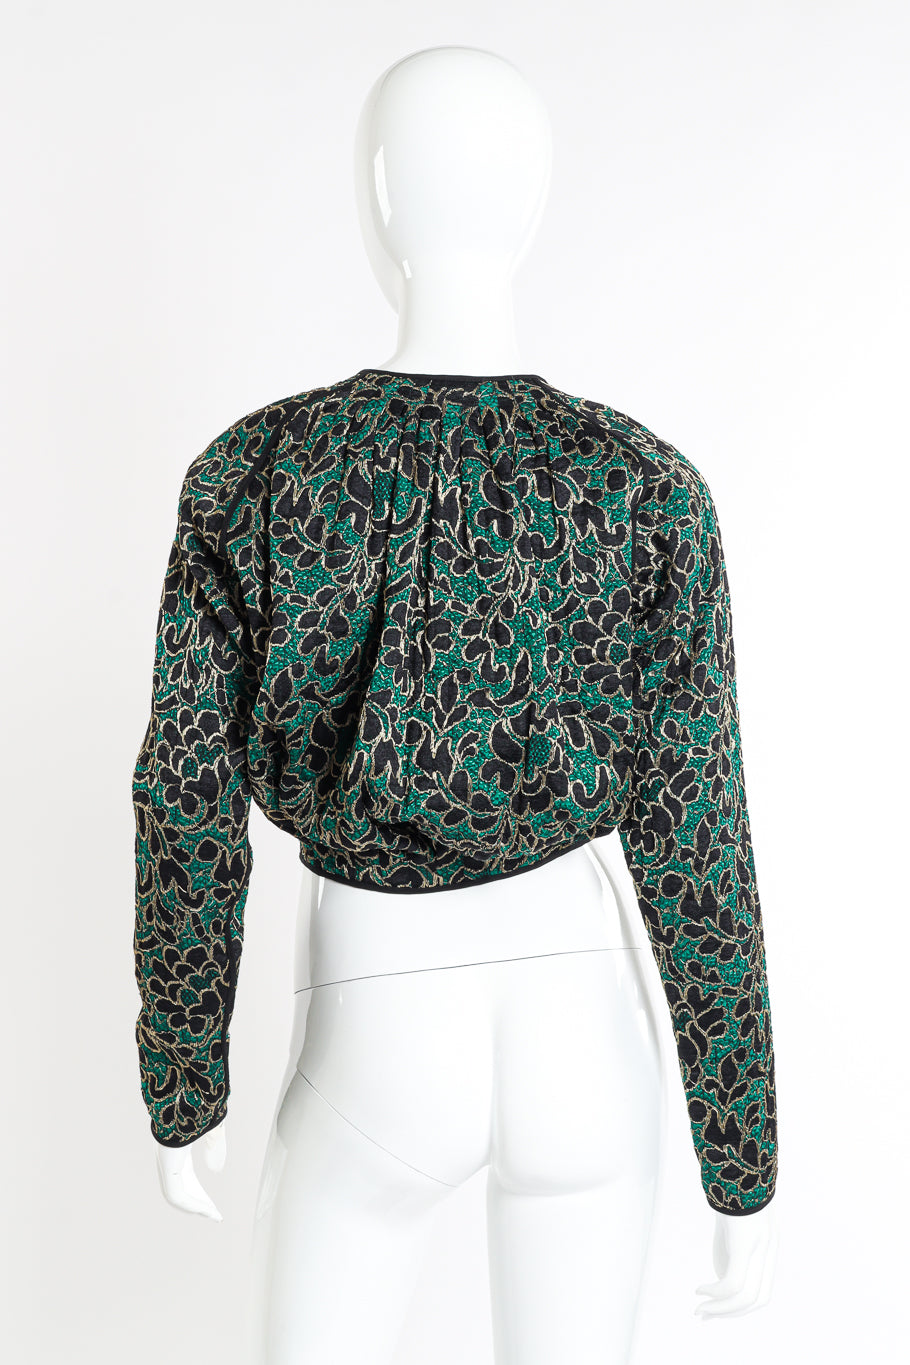 Vintage Geoffrey Beene Lace Jacket back on mannequin @recessla